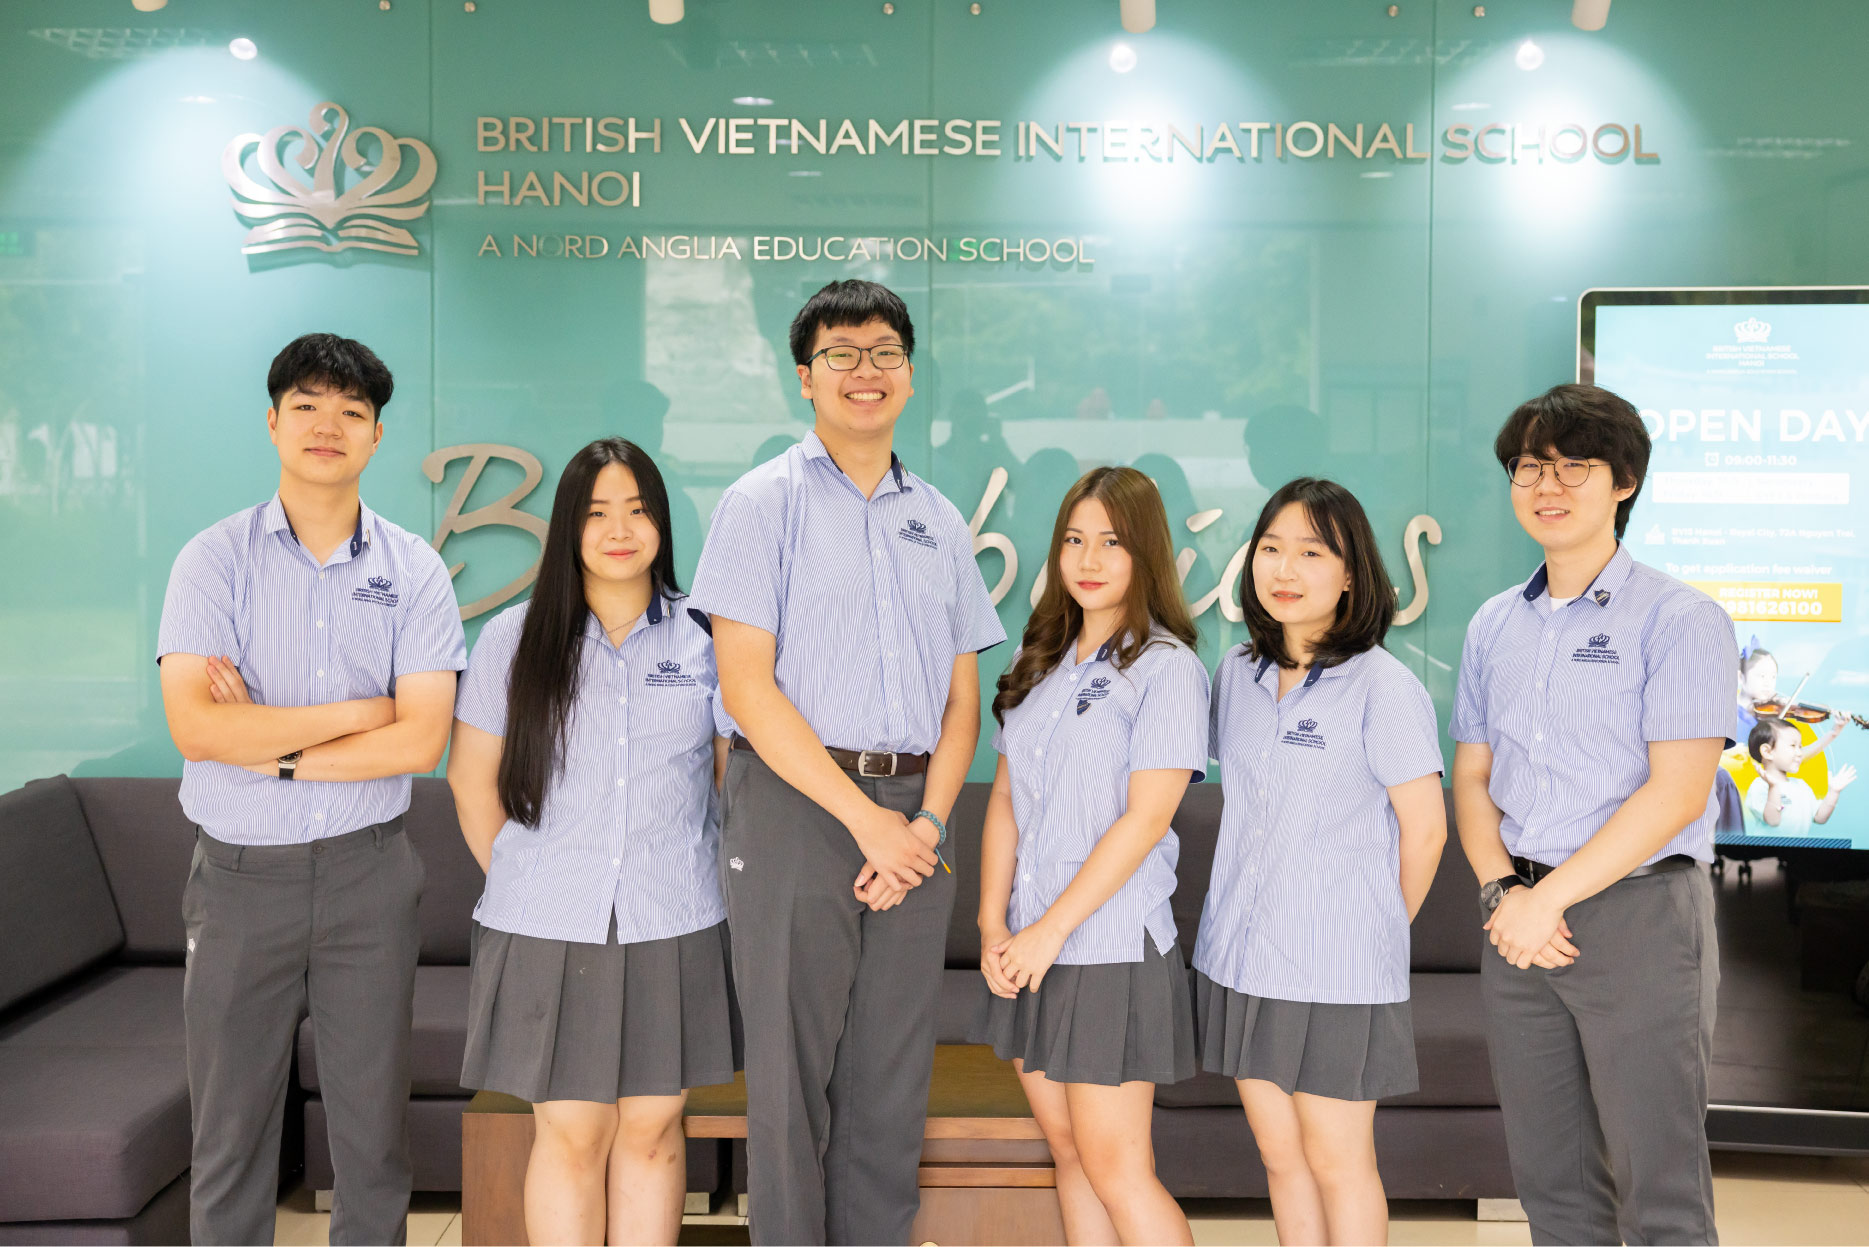 Trường Quốc tế BVIS Hà Nội nhận kết quả tái kiểm định chất lượng từ CIS/WASC - BVIS Hanoi has achieved International re-accreditation status with CIS-WASC